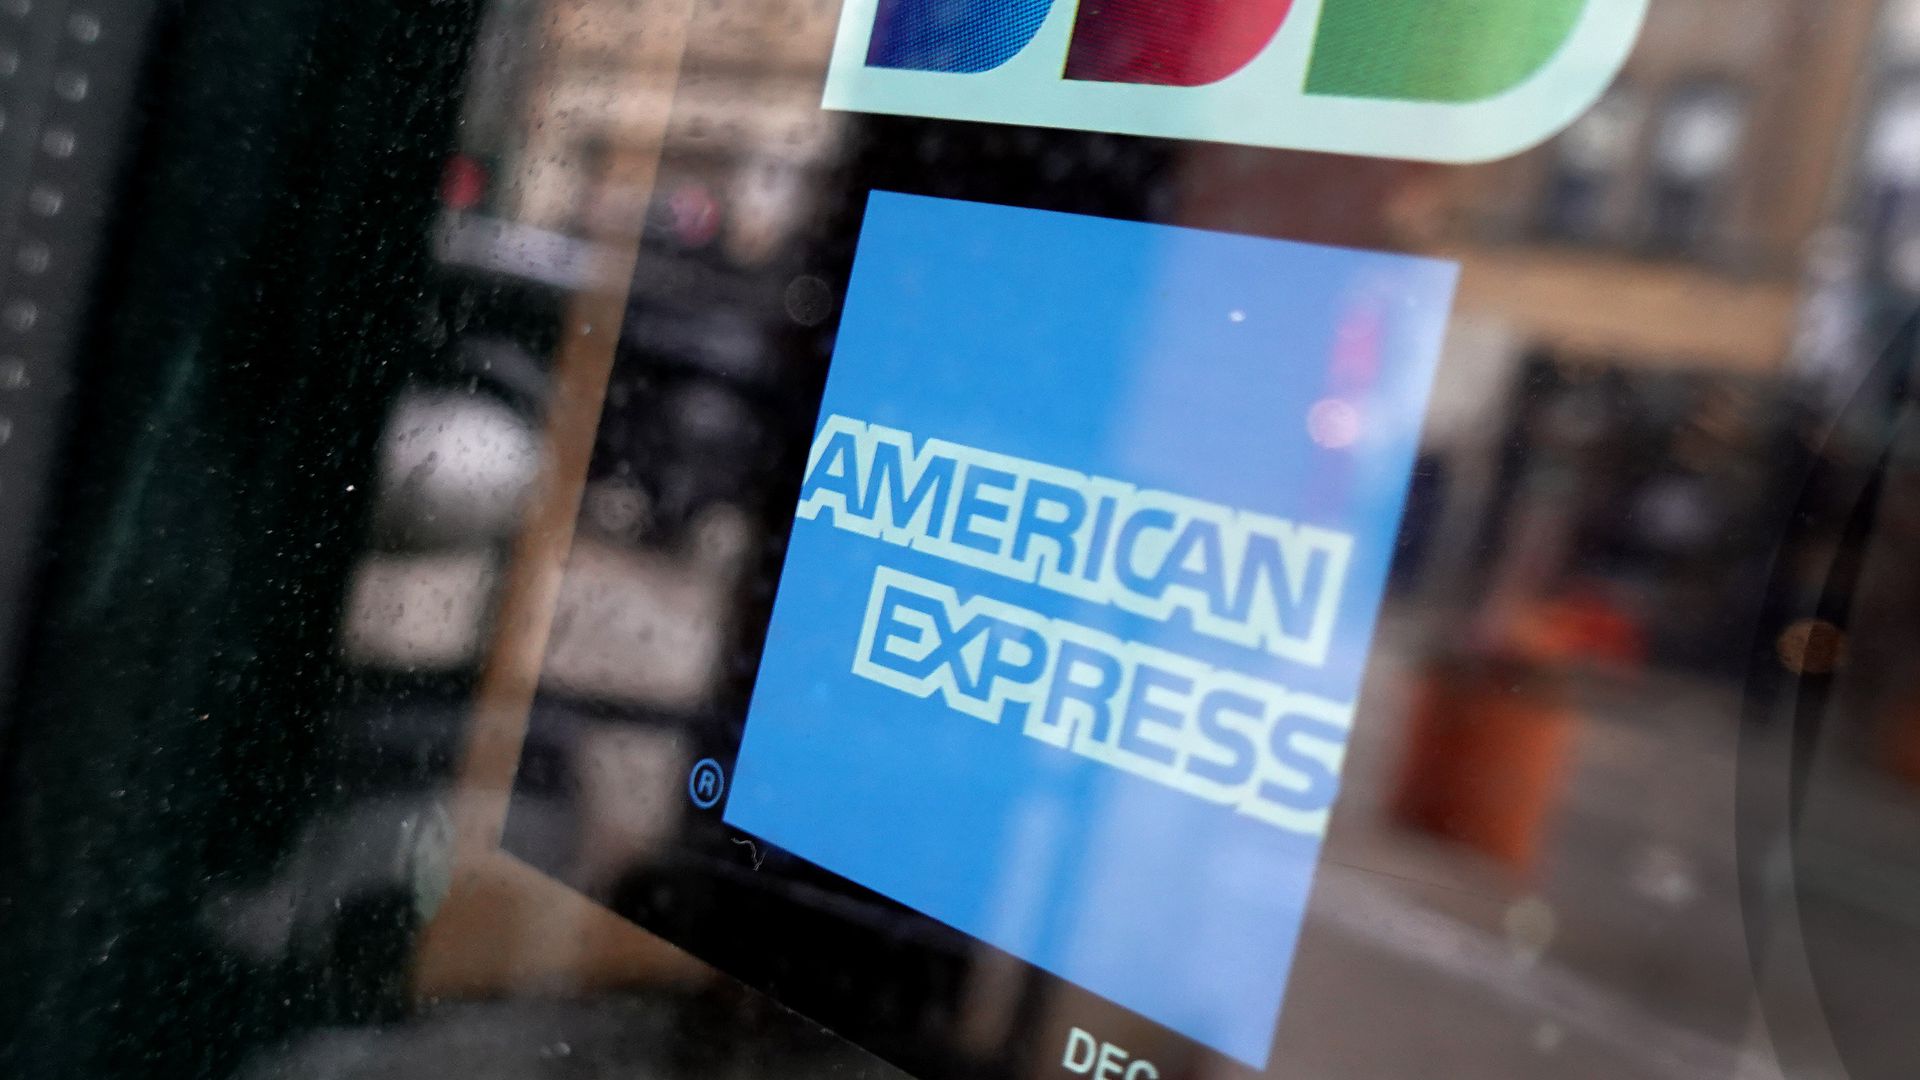 Công ty American Express của Mỹ đã được chấp thuận triển khai dịch vụ thanh toán thẻ ngân hàng ở Trung Quốc đại lục.